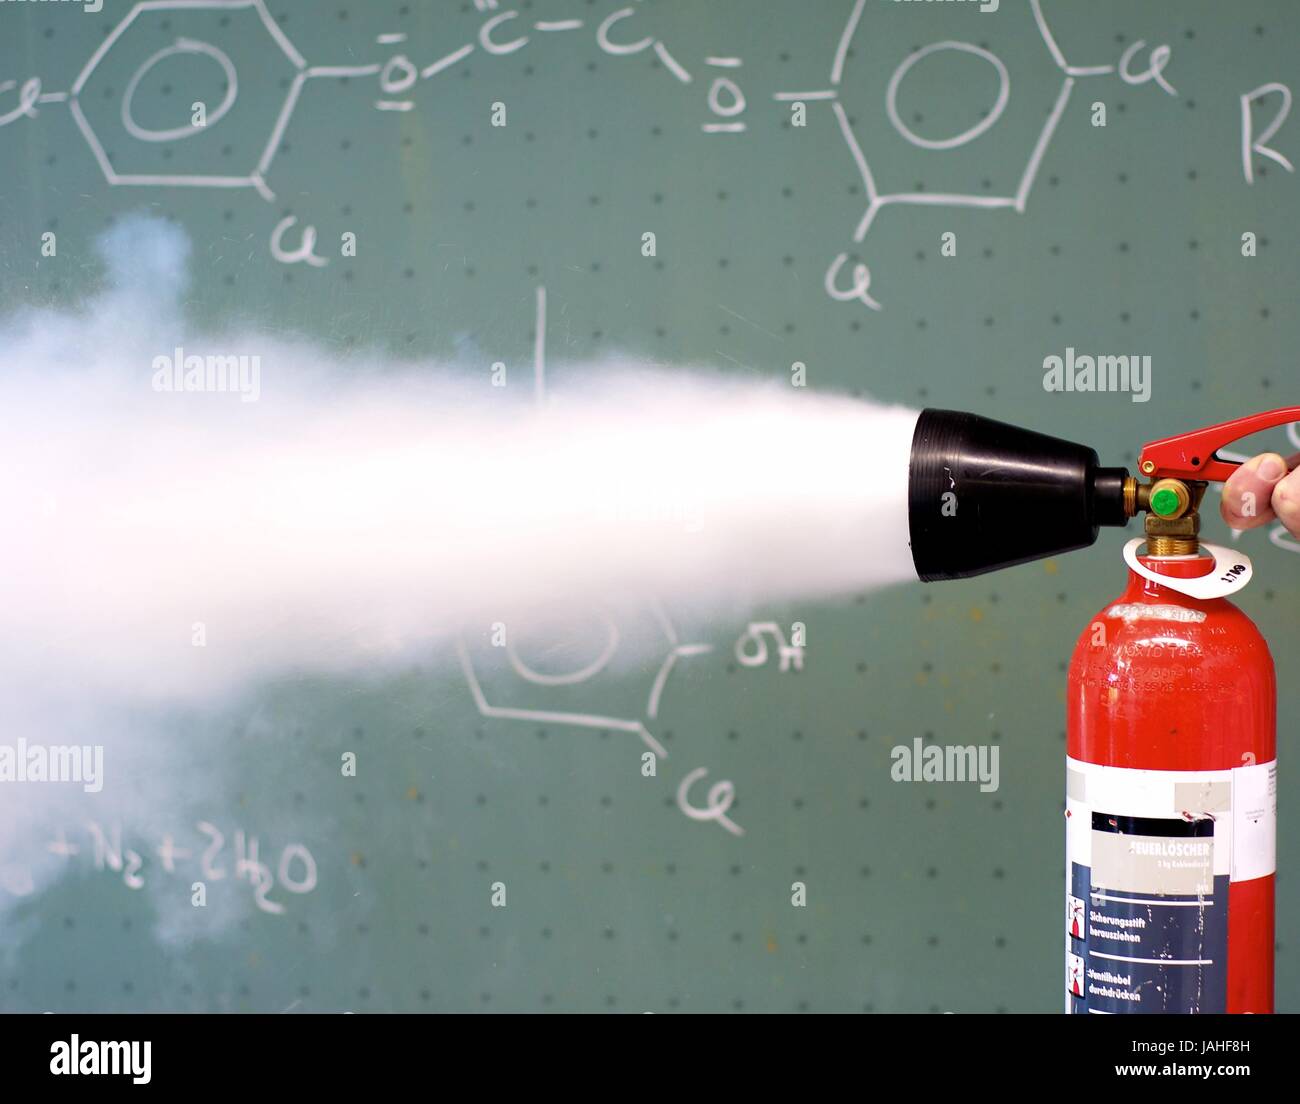 CO2 Feuerlöscher im Einsatz Stock Photo - Alamy